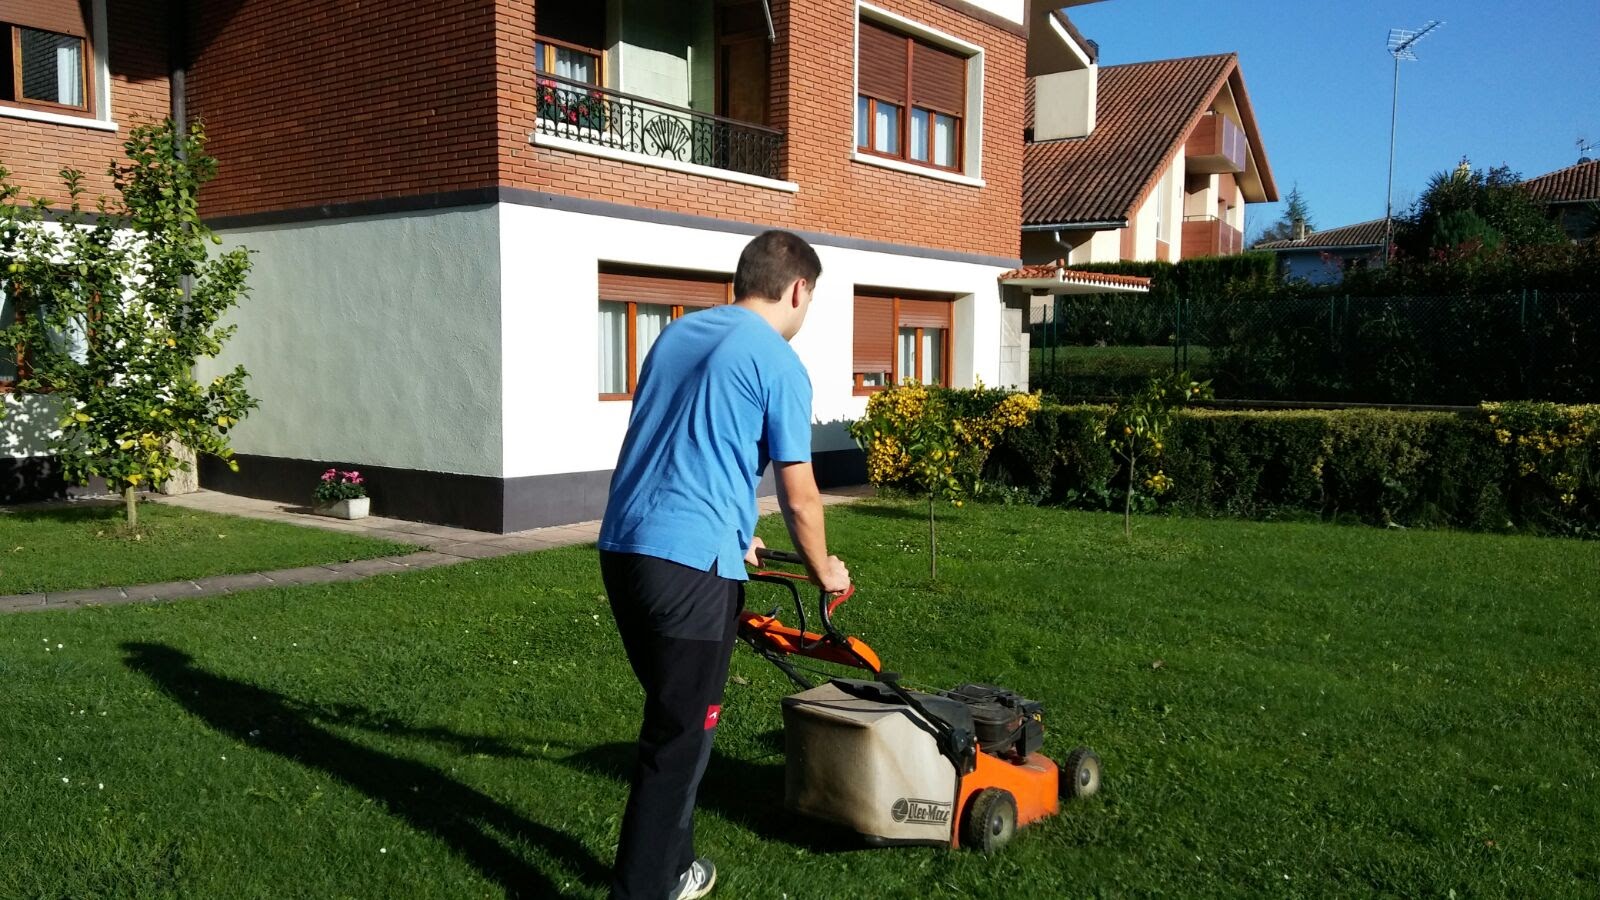 Mowing the lawn of a garden in Lezama (Bizkaia), 2017. Maider Aurrekoetxea